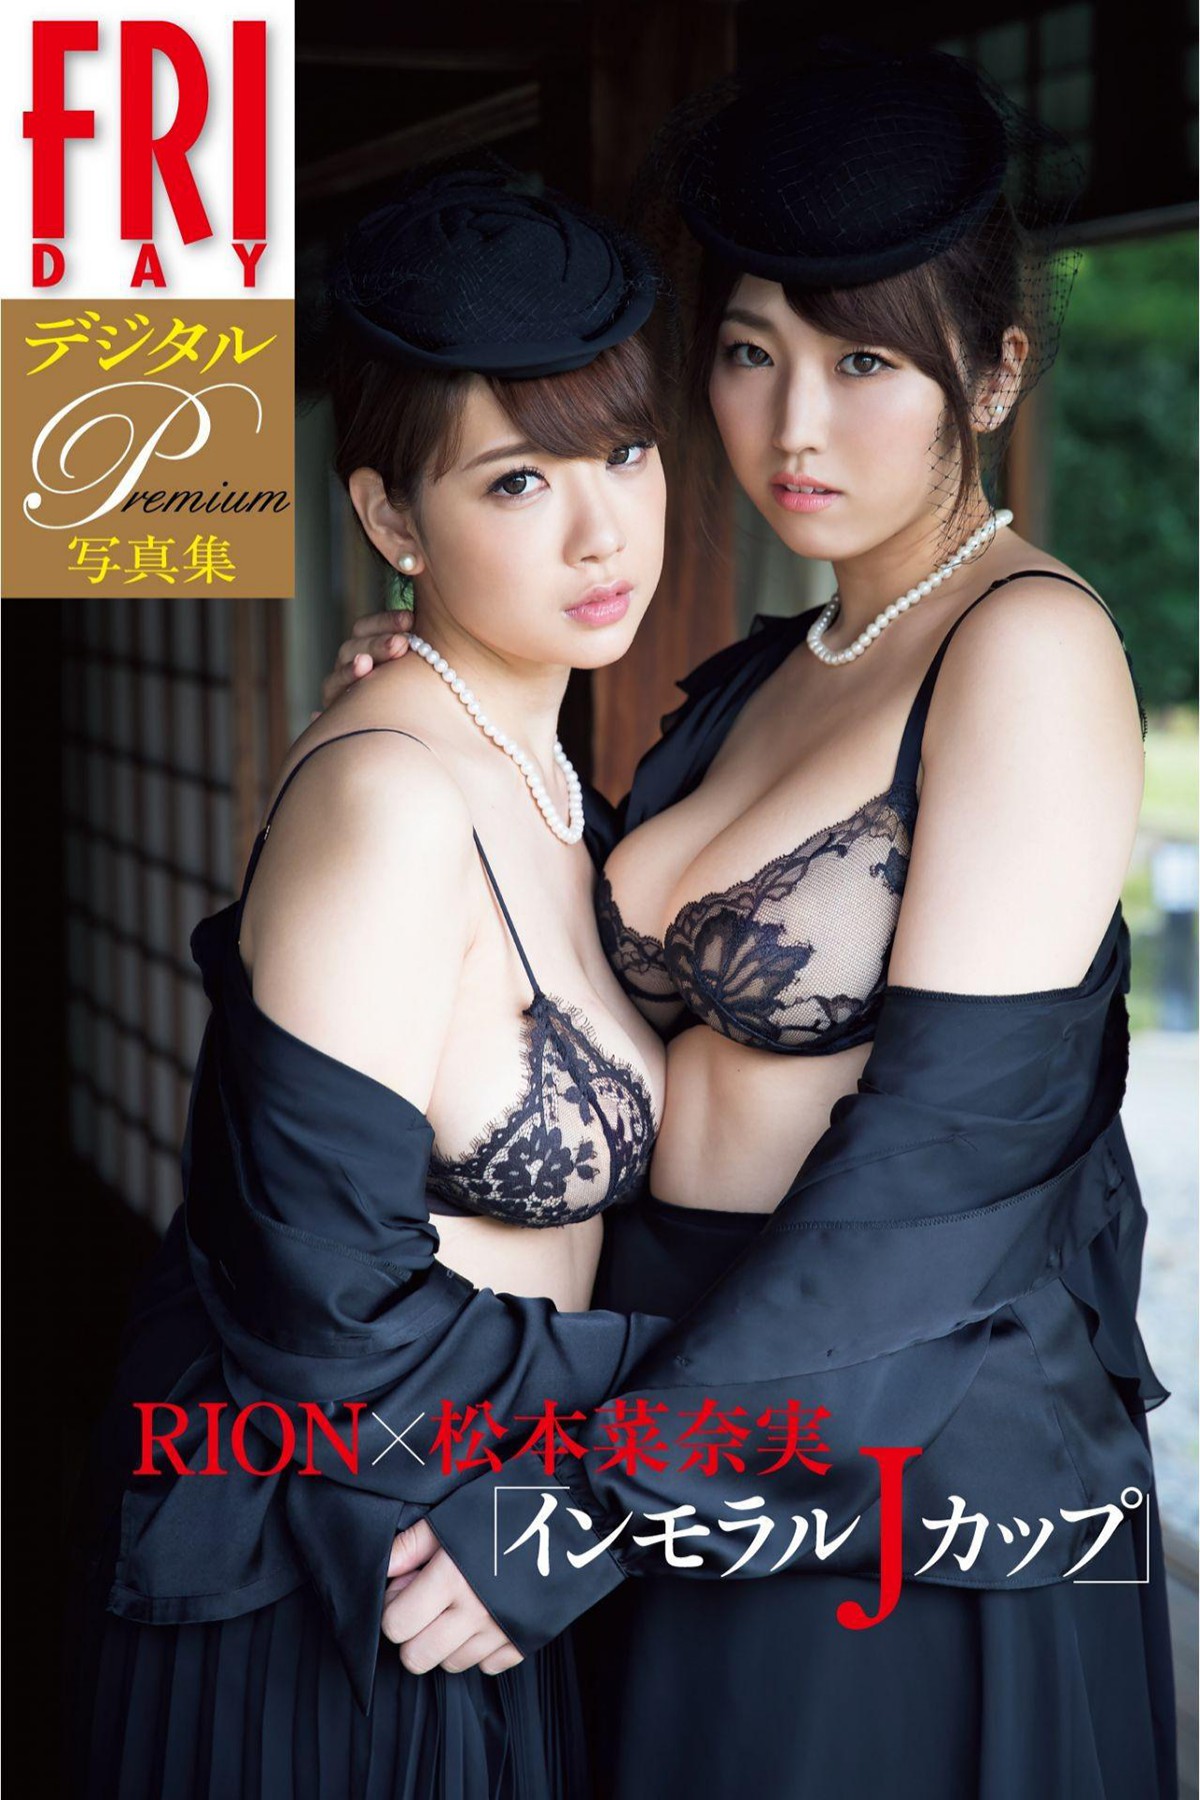 FRIDAY Digital Photobook 2018-02-09 Rion And Nanami Matsumoto 松本菜奈実 - Immoral J Cup